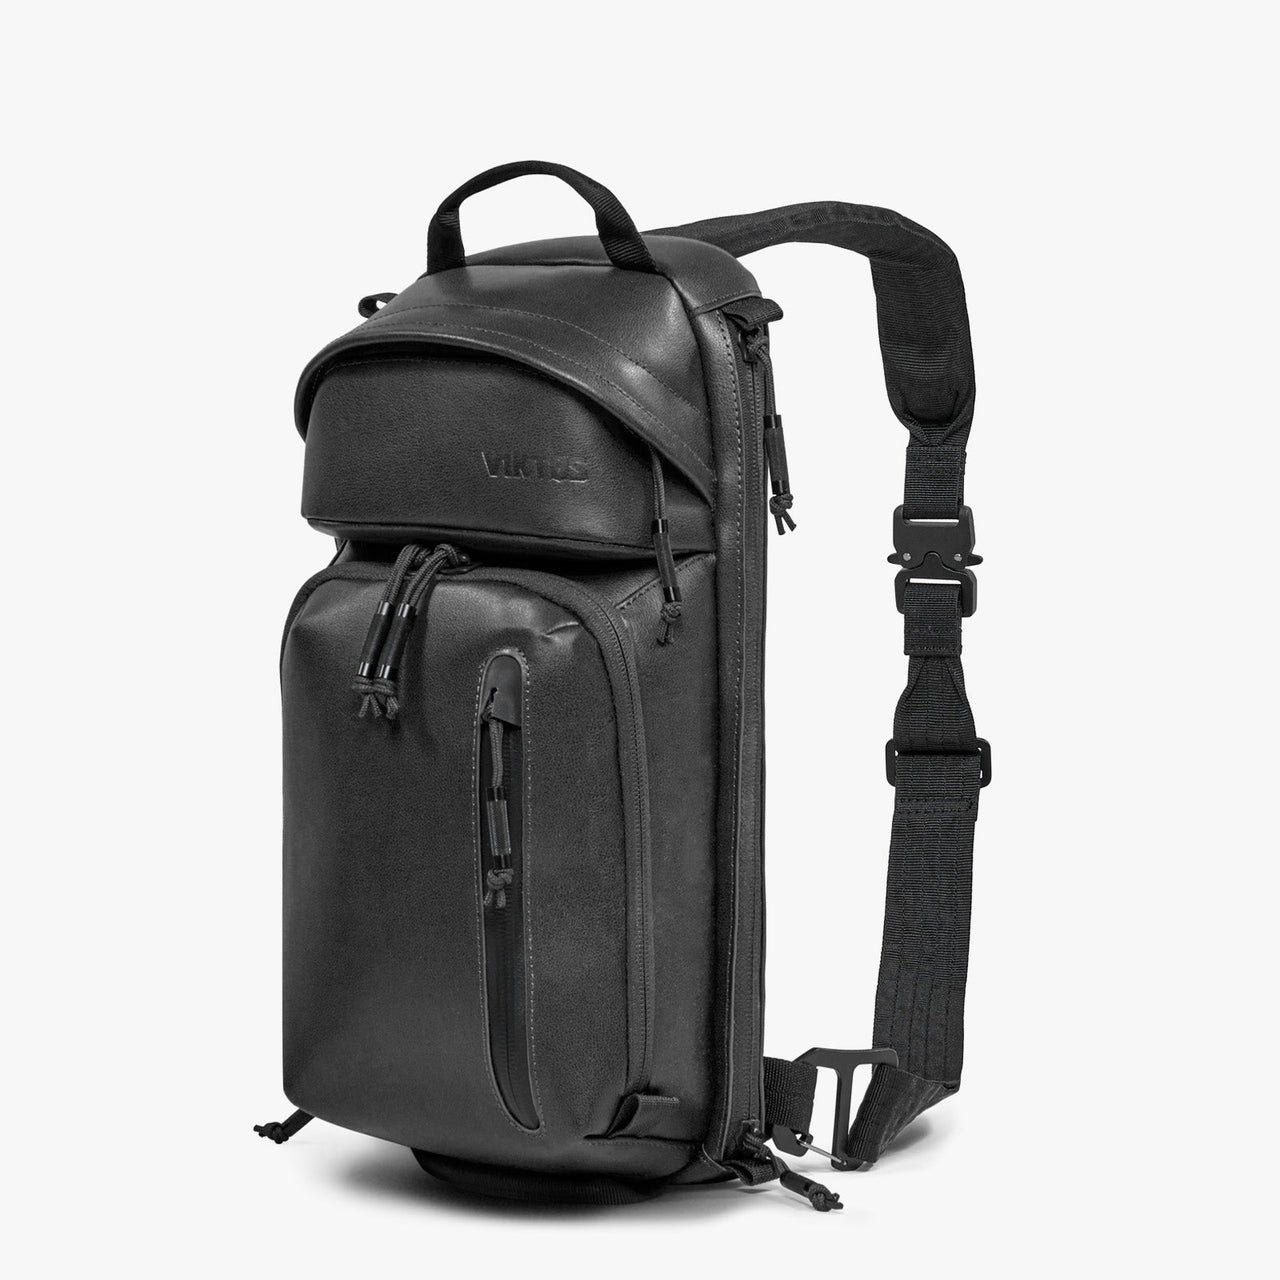 VIKTOS Upscale 3 Leather Sling Bag Tactical Gear Australia Supplier Distributor Dealer